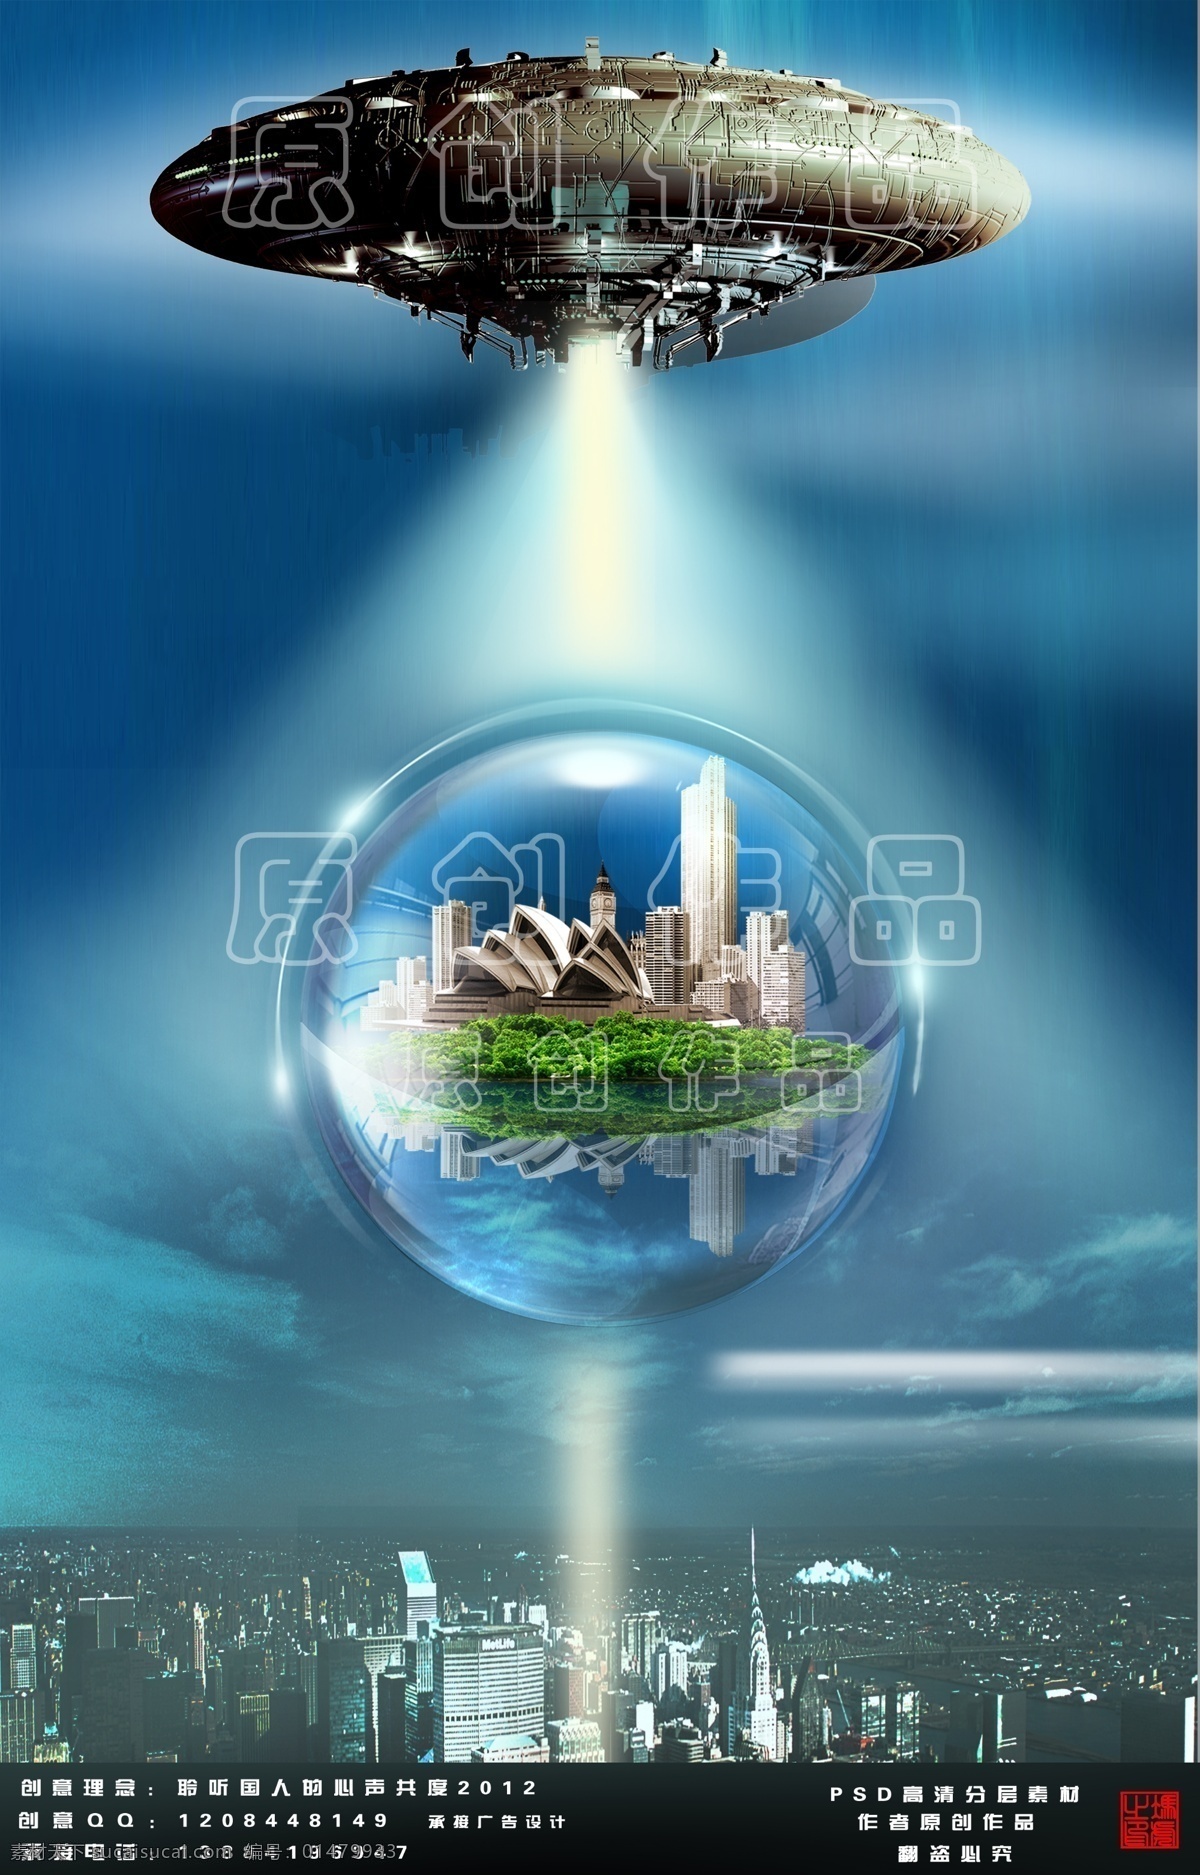 创意城市 楼房 城市 飞碟 光束 发光 ufo 外星人 创意 中国风 蓝天 古韵 古典 绿色城市 和谐城市 和谐家园 低碳城市 节能城市